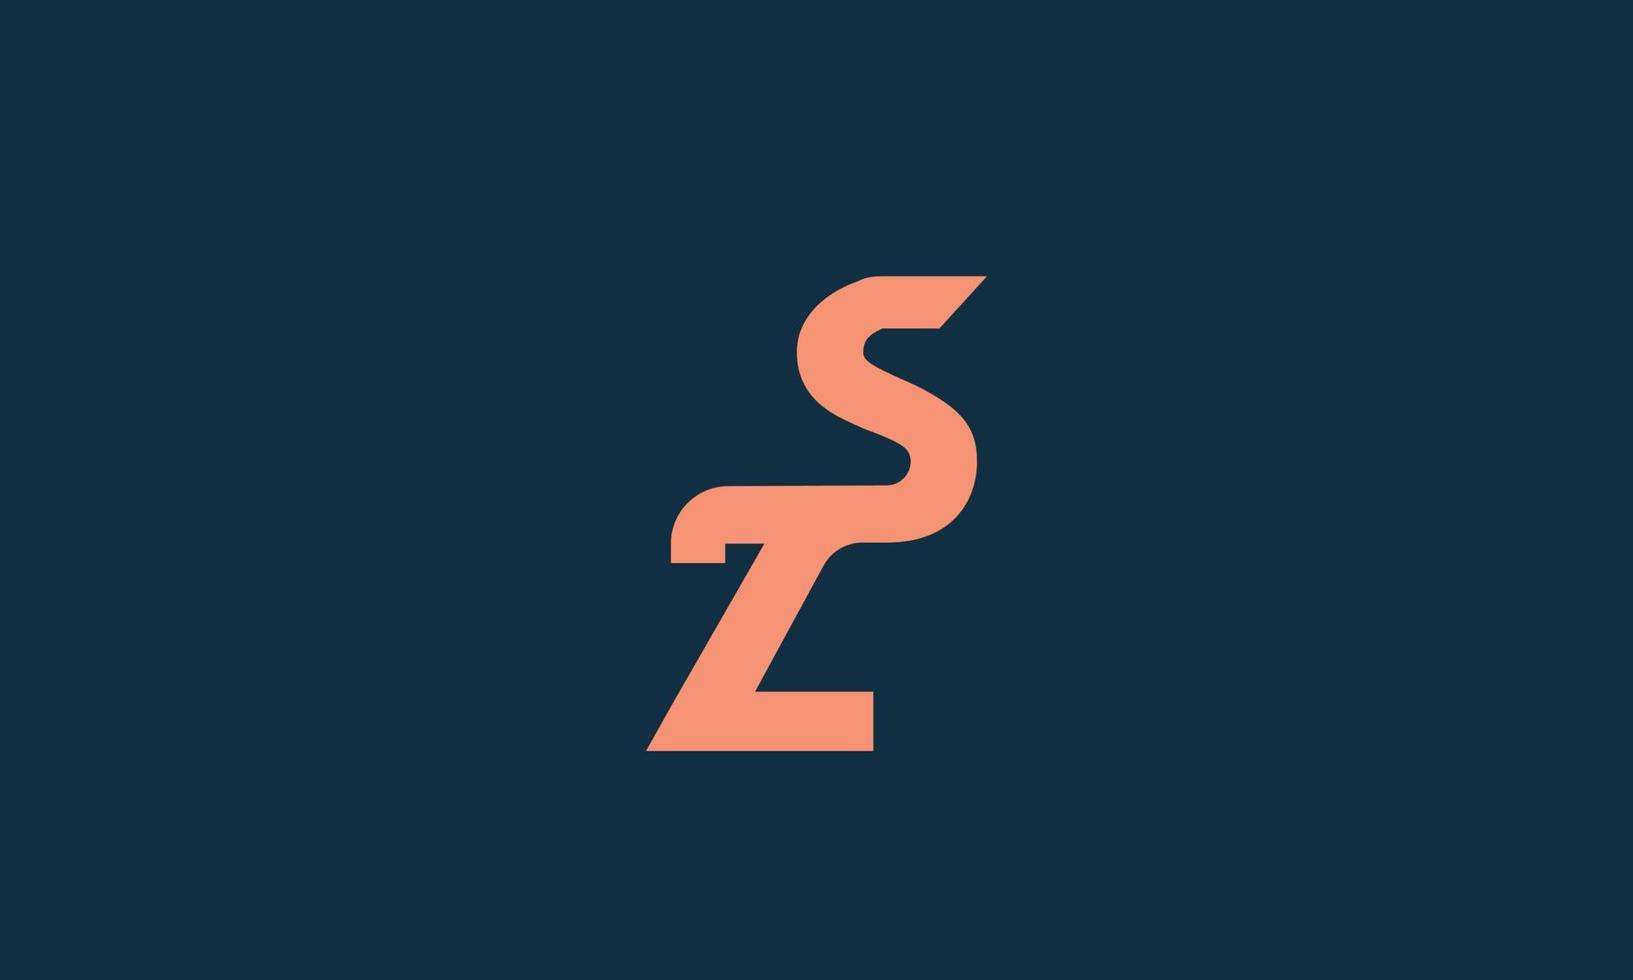 letras del alfabeto iniciales monograma logo zs, sz, z y s vector